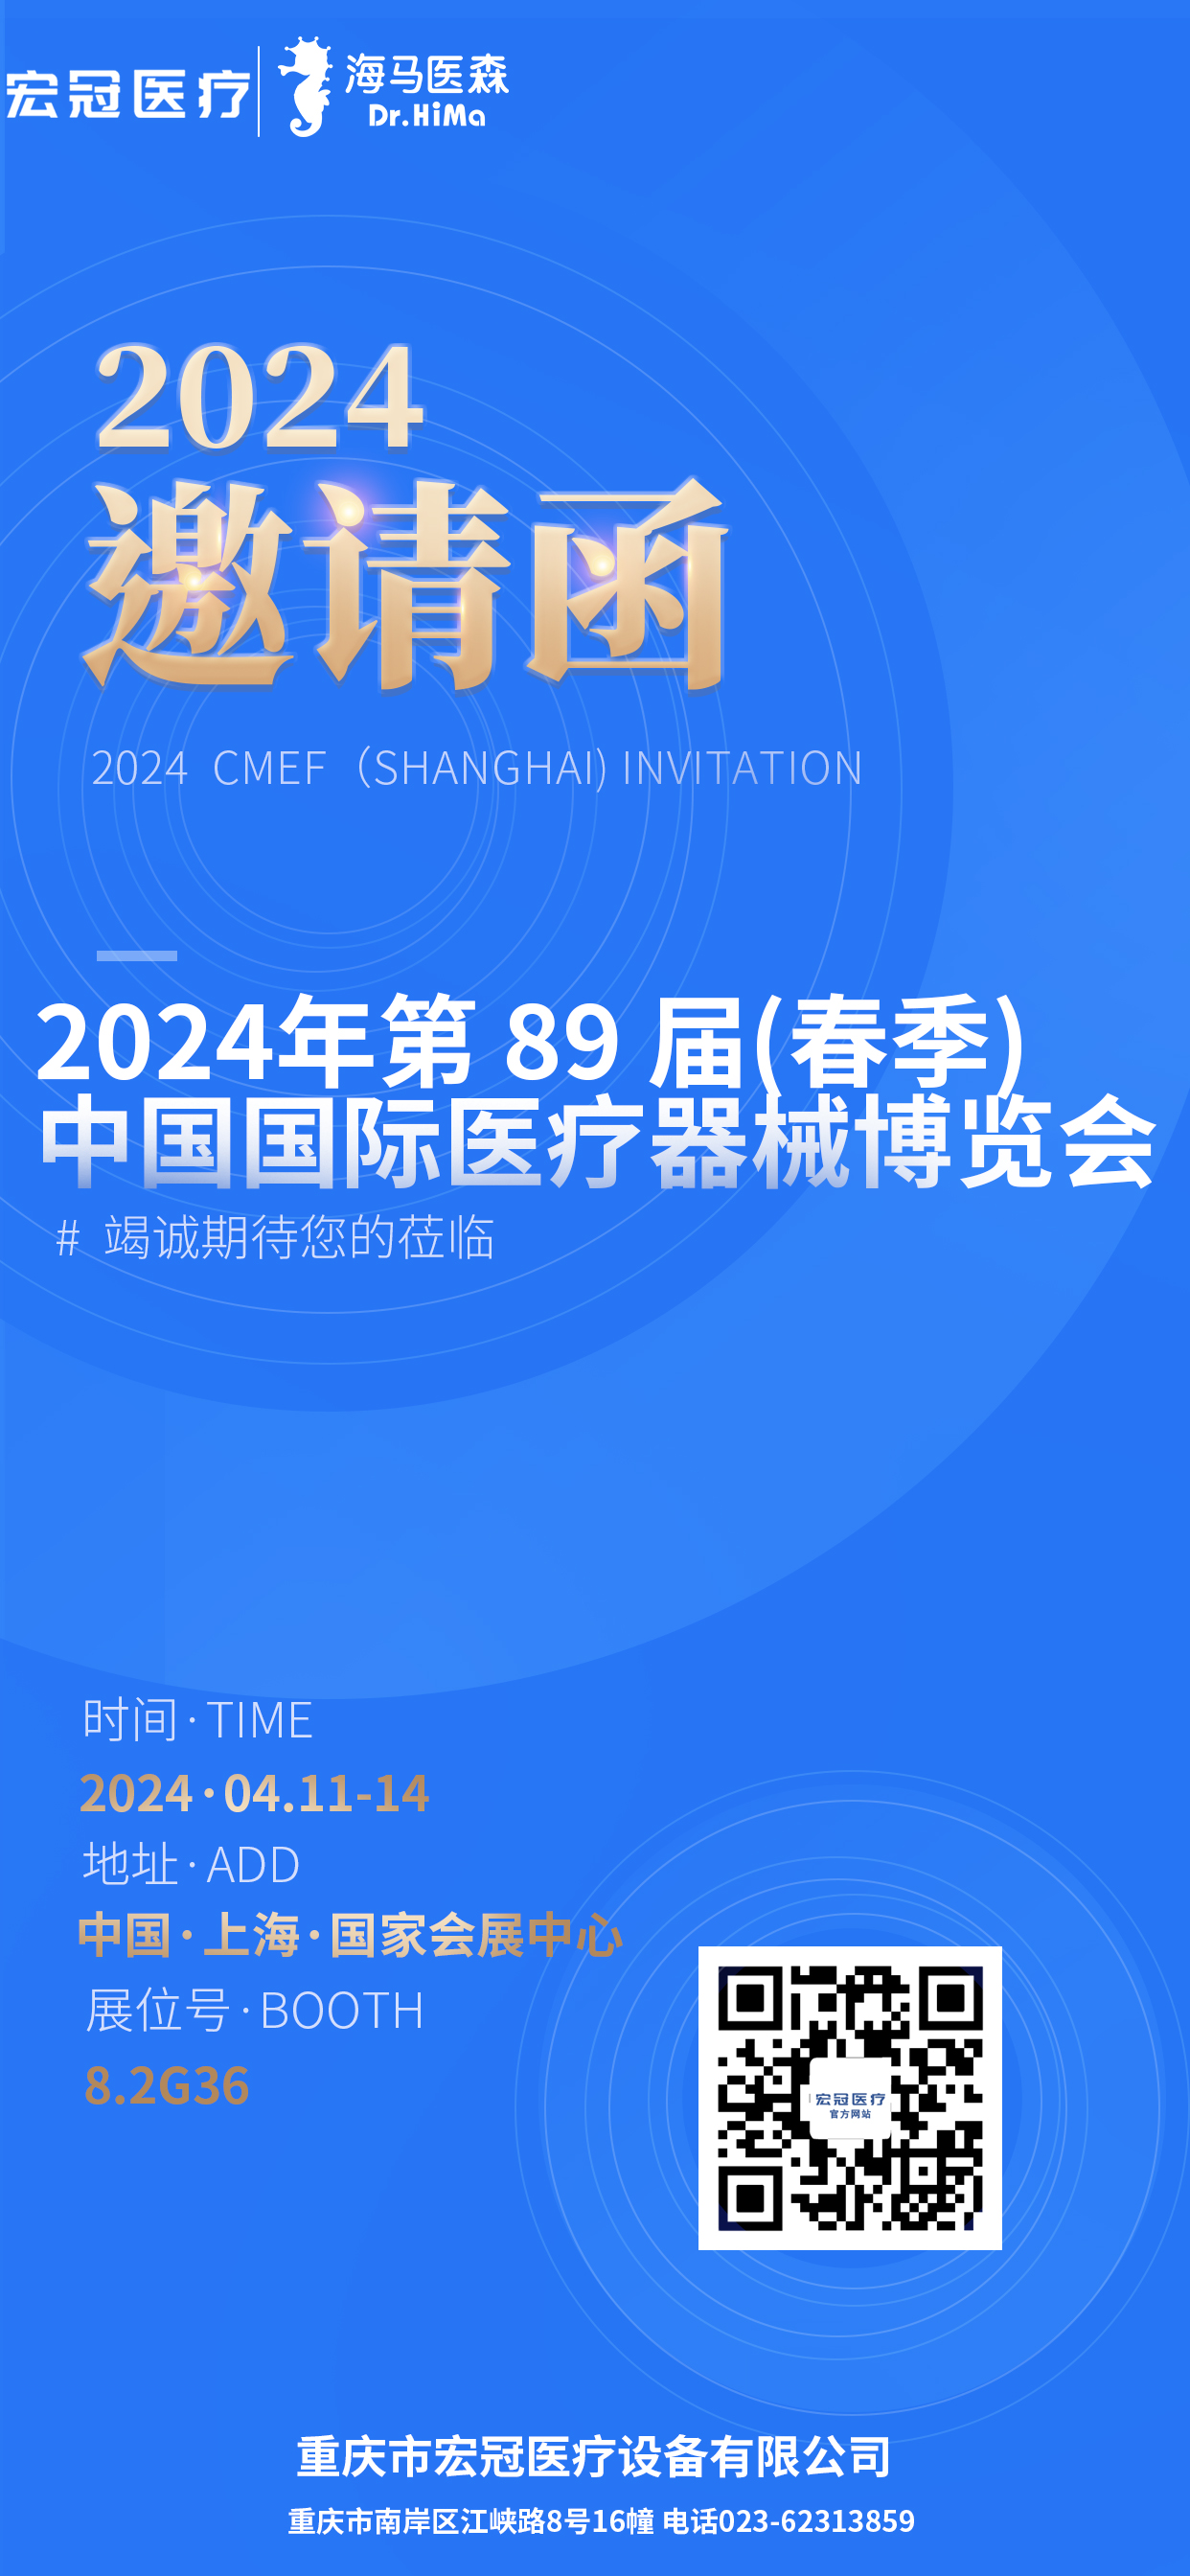 2024 CMEF (شنگھائي) لاء دعوت